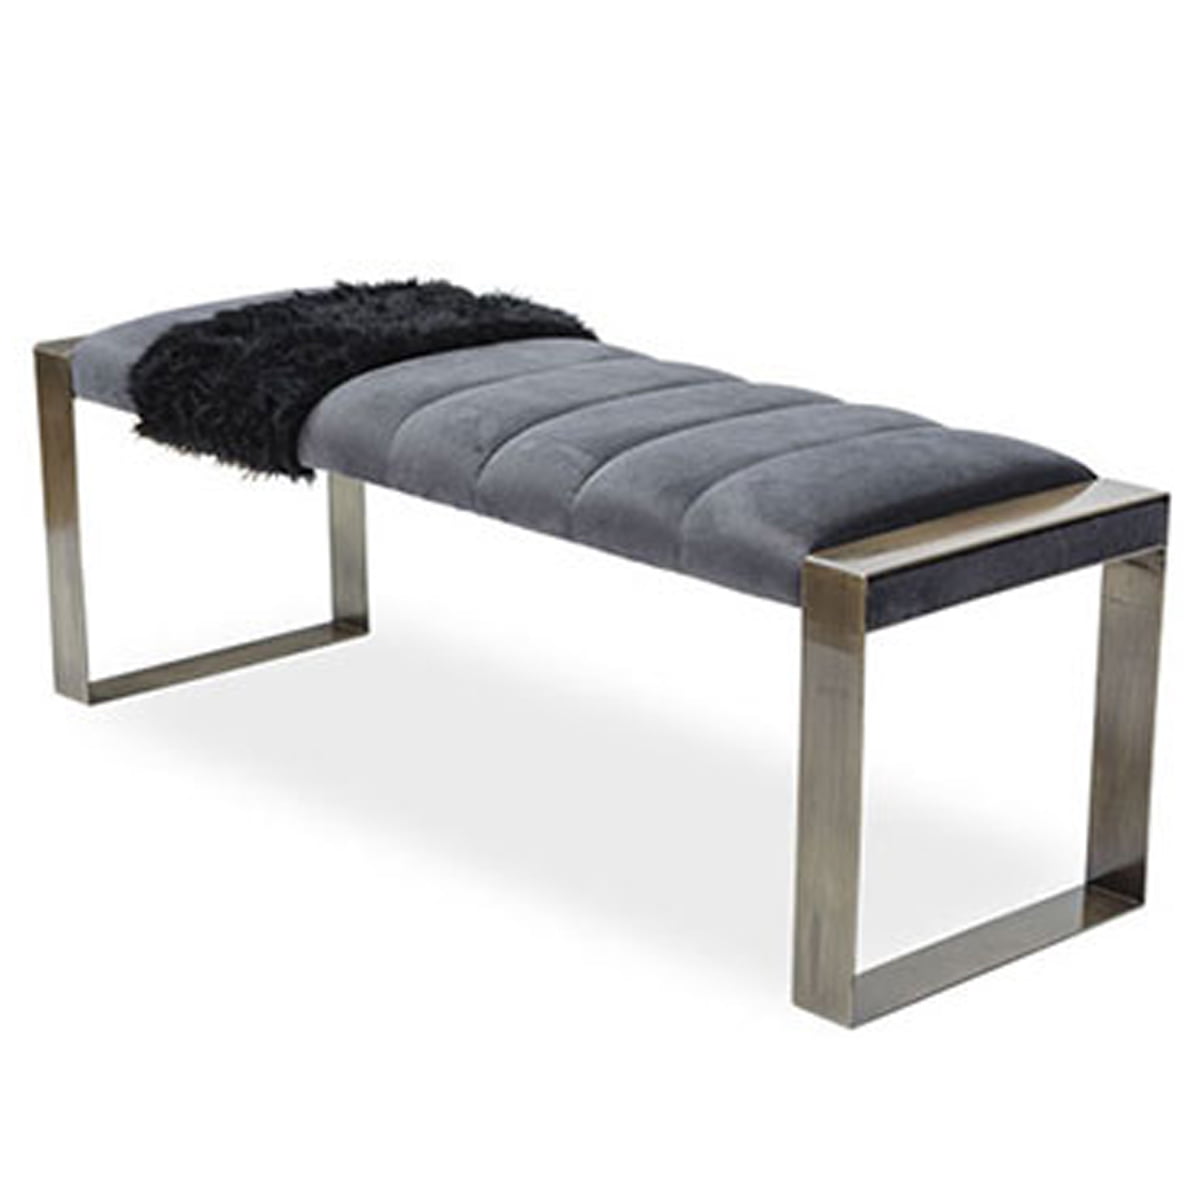 Neo 300233e Indoor Metal Bench Upholstered Neo Horeca Furniture